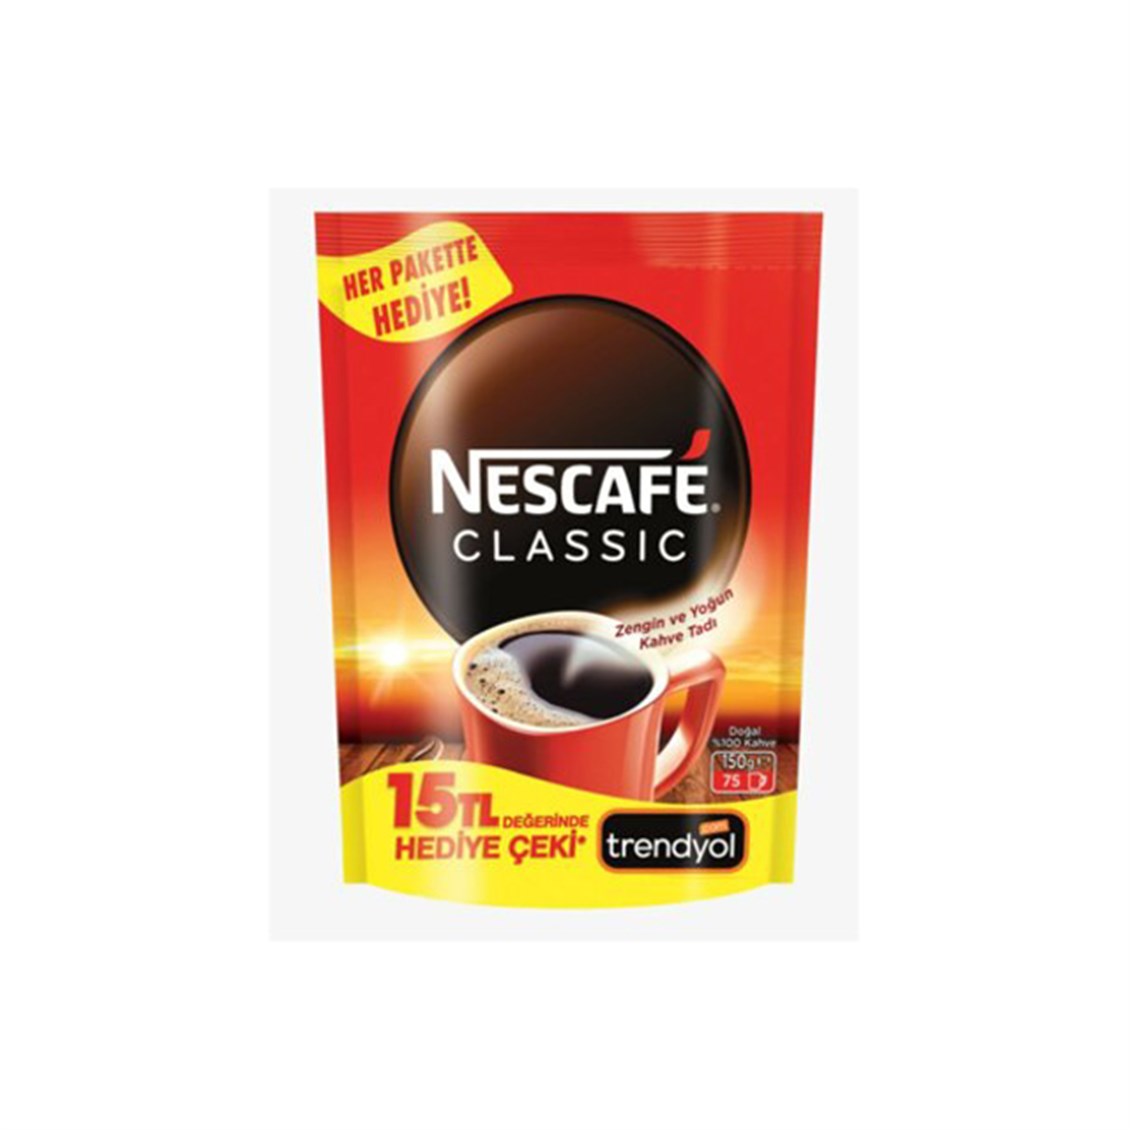 Nescafe Classic Trendyol Hediye Çeki Hediye - Onur Market